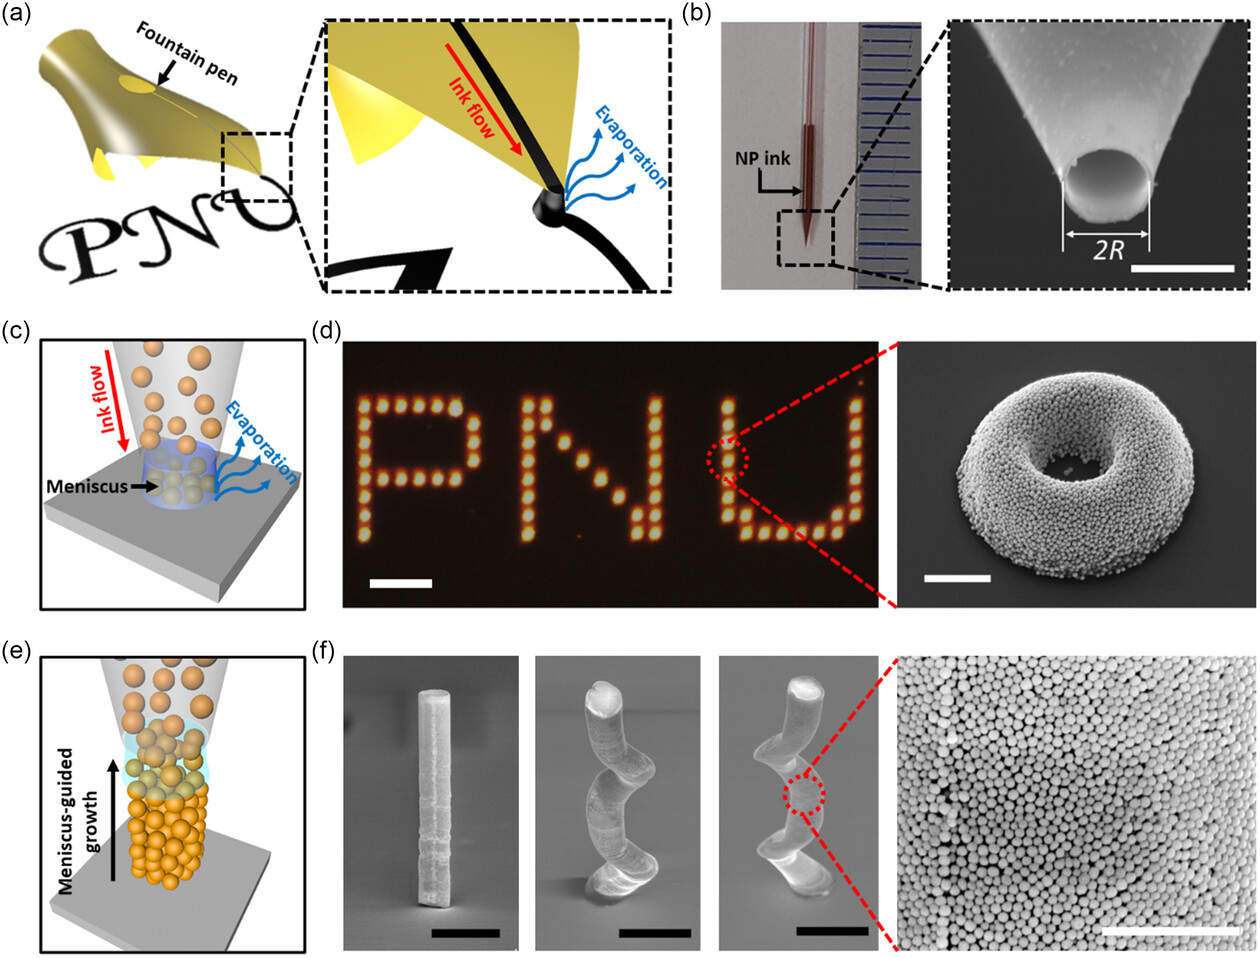 El innovador método de nanopluma podría transformar la nanofotónica